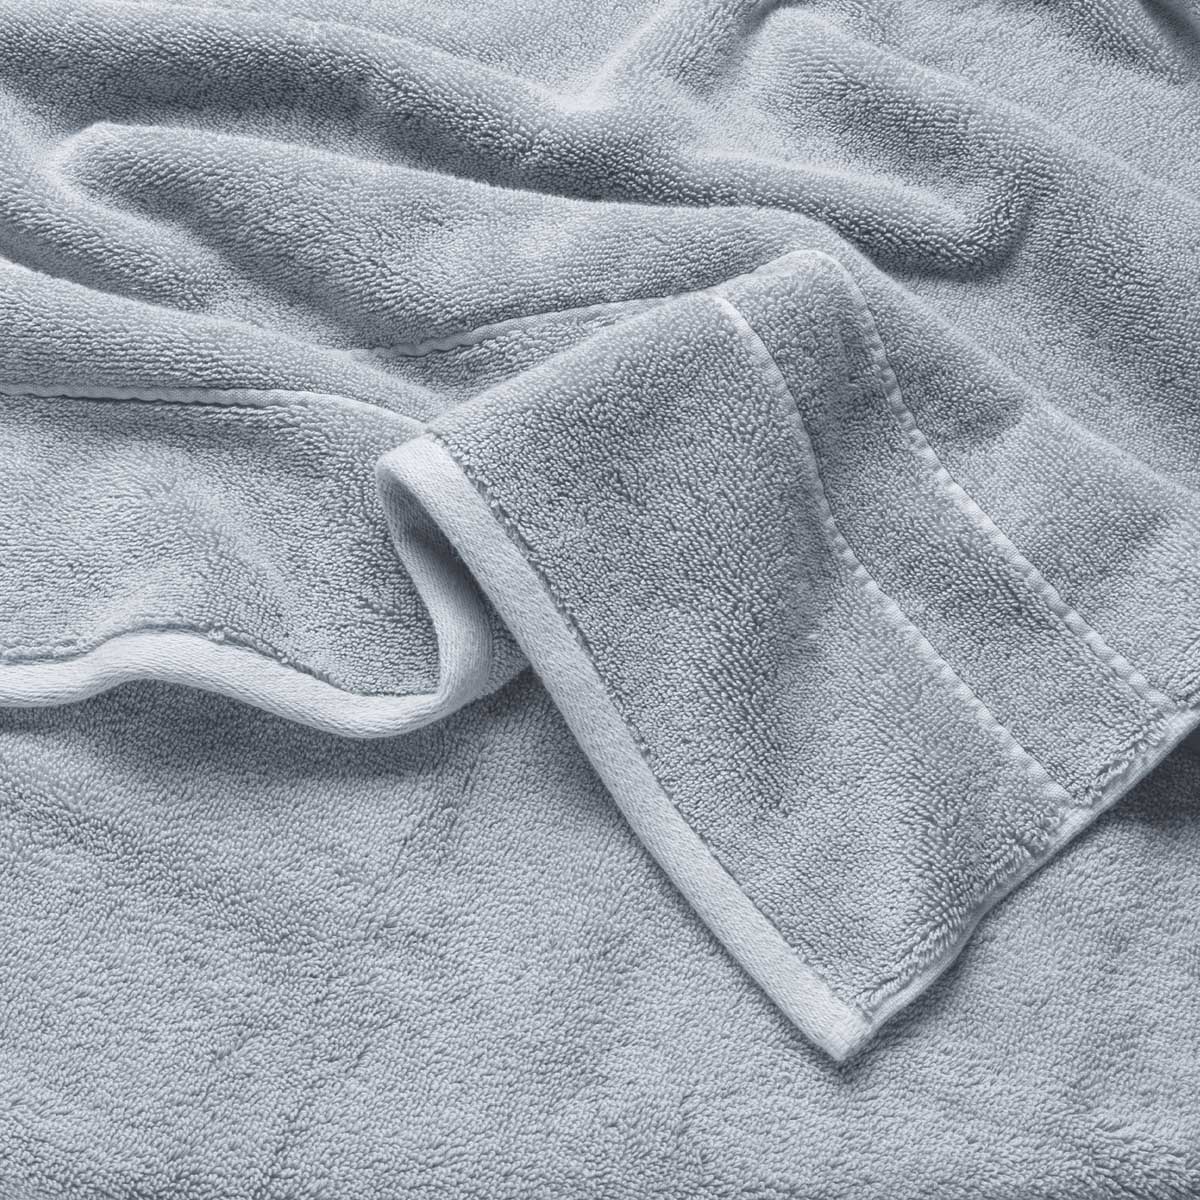 Premium Plush Bath Towel in the color Harbor Mist. Photo of Premium Plush Bath Towel taken as a close up only showing the Premium Plush Bath Towel's texture 